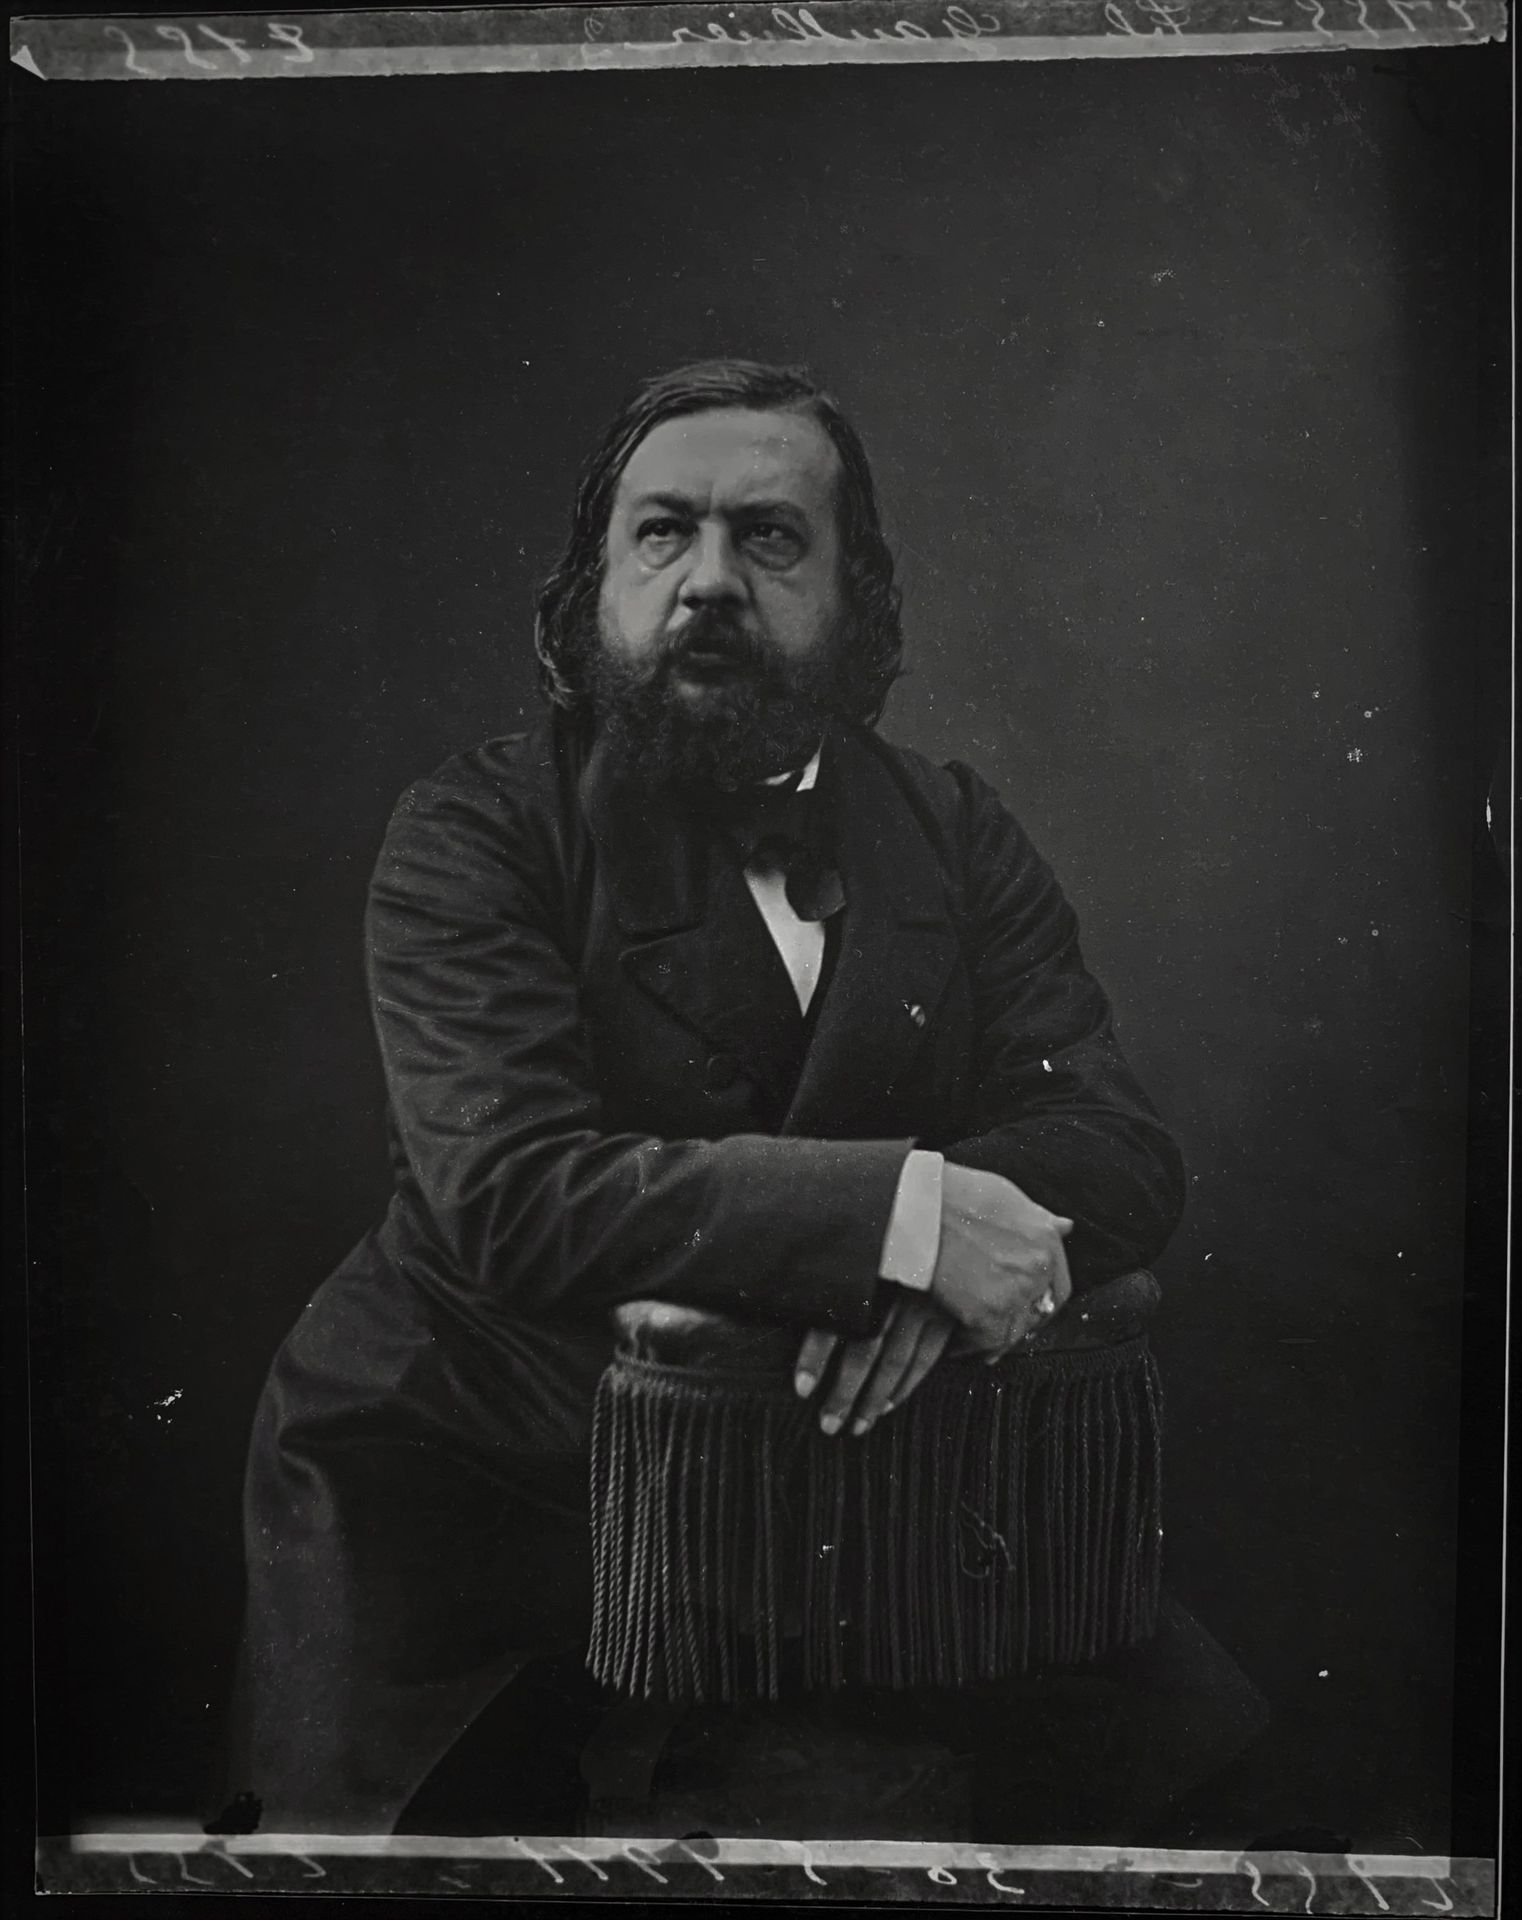 Null 
加斯帕德-费利克斯-图尔纳雄（1820-1910），被称为纳达尔。作家泰奥菲勒-高缇耶的肖像。大型银质摄影作品，背面有注释，约1900年，尺寸为25&hellip;